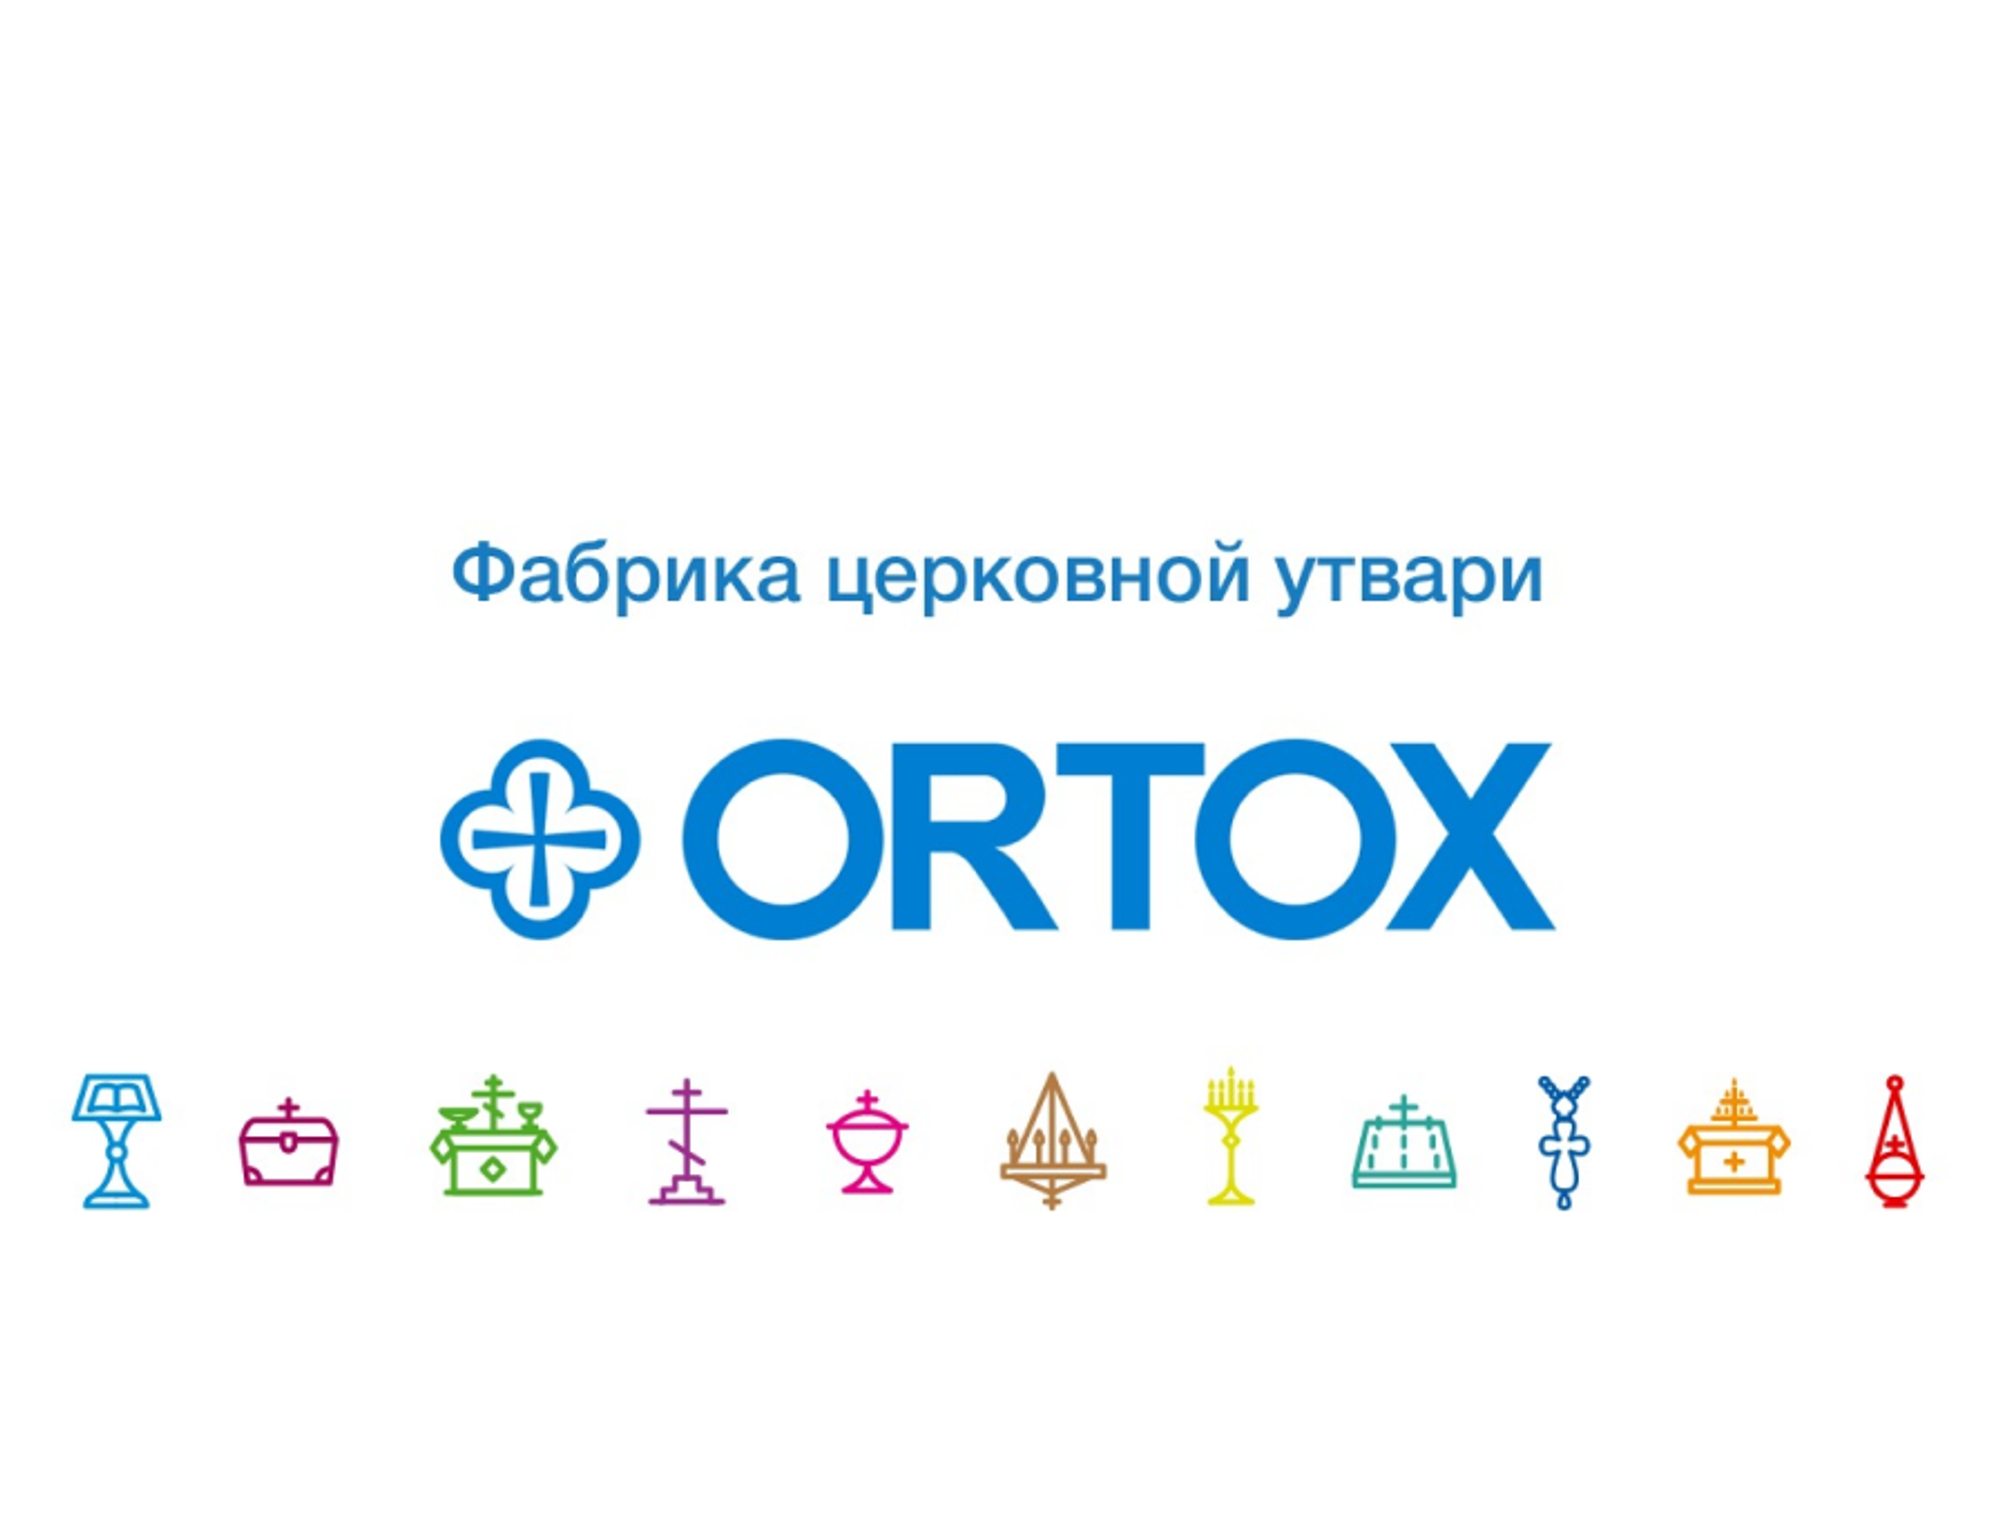 Ortox